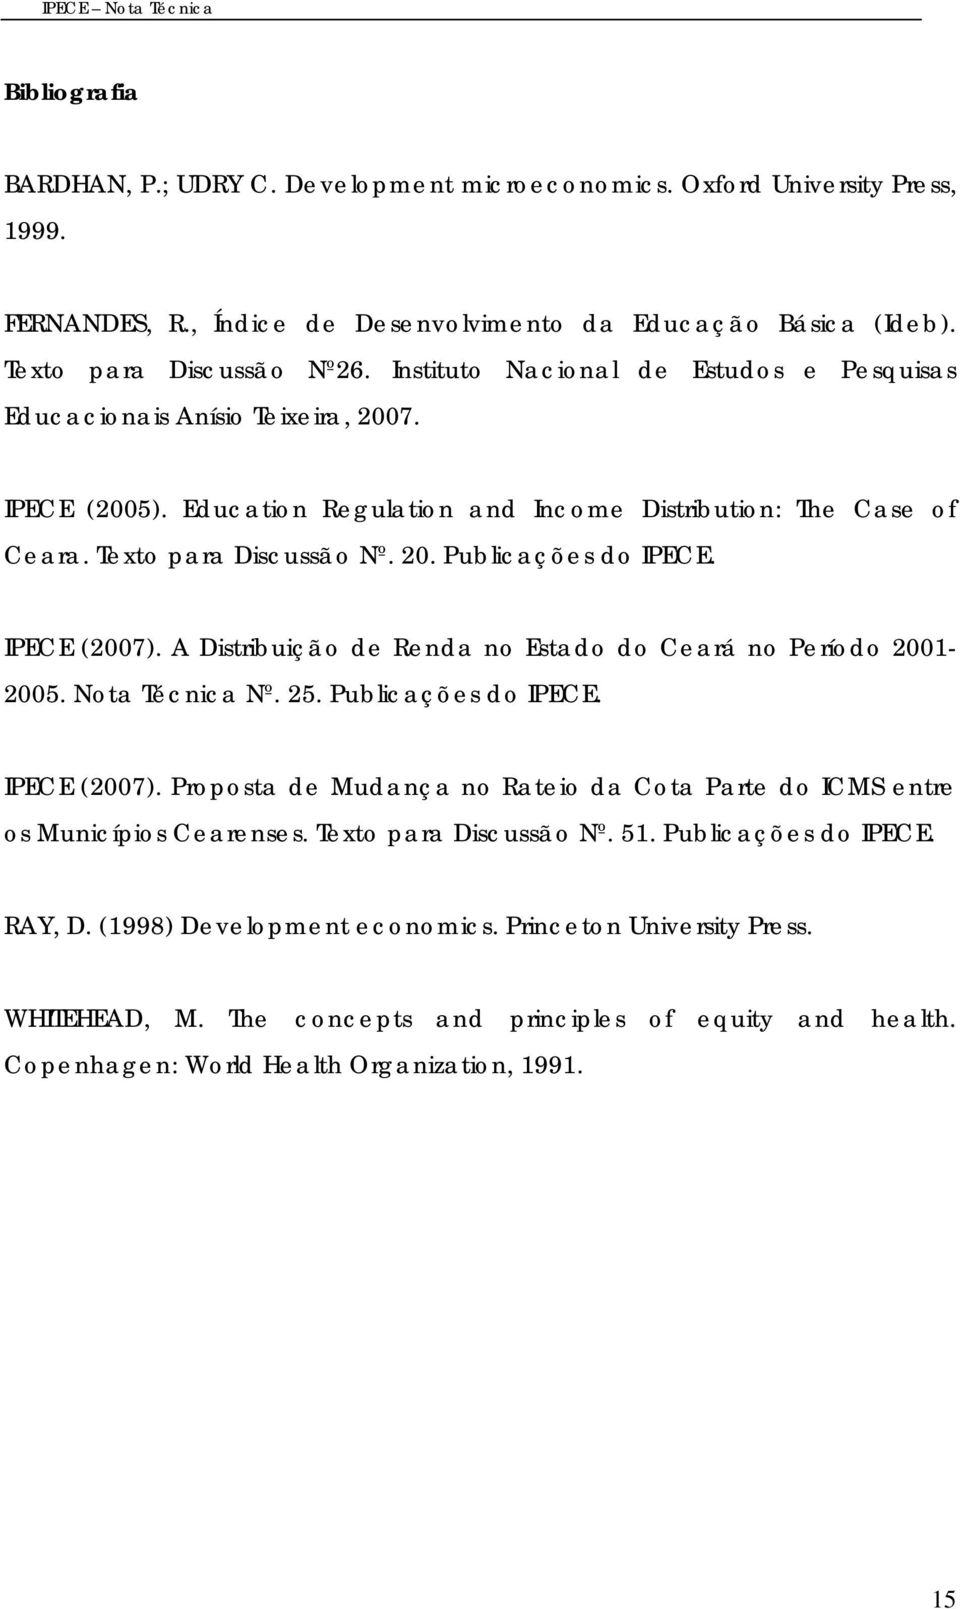 IPECE (2007). A Dstrbução de Renda no Estado do Ceará no Período 2001-2005. ota Técnca º. 25. Publcações do IPECE. IPECE (2007).